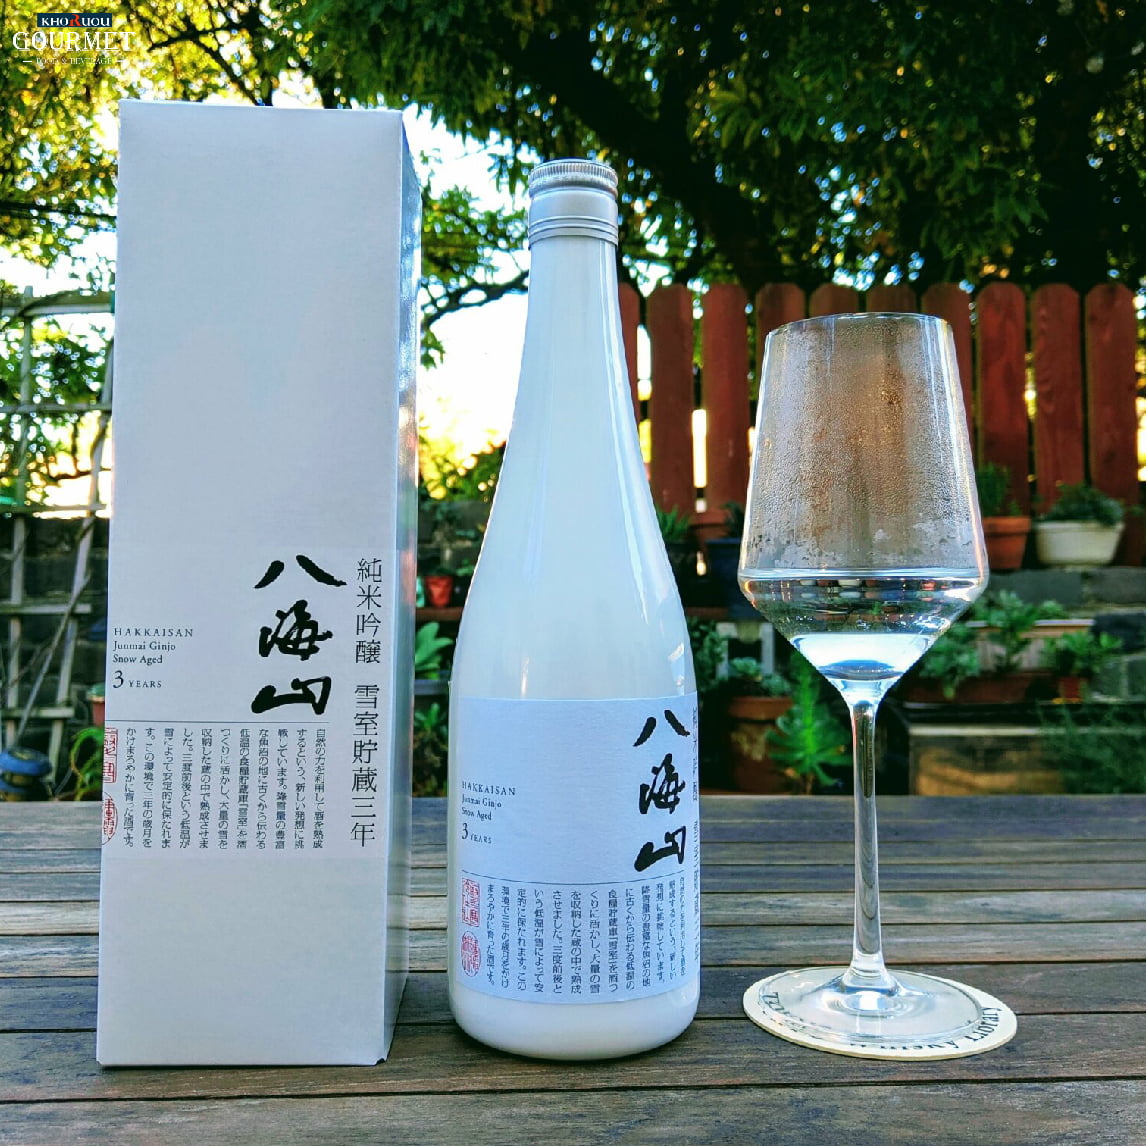 Hakkaisan Snow Aged 3 Years Junmai Daiginjo là một sản phẩm rượu tự nhiên